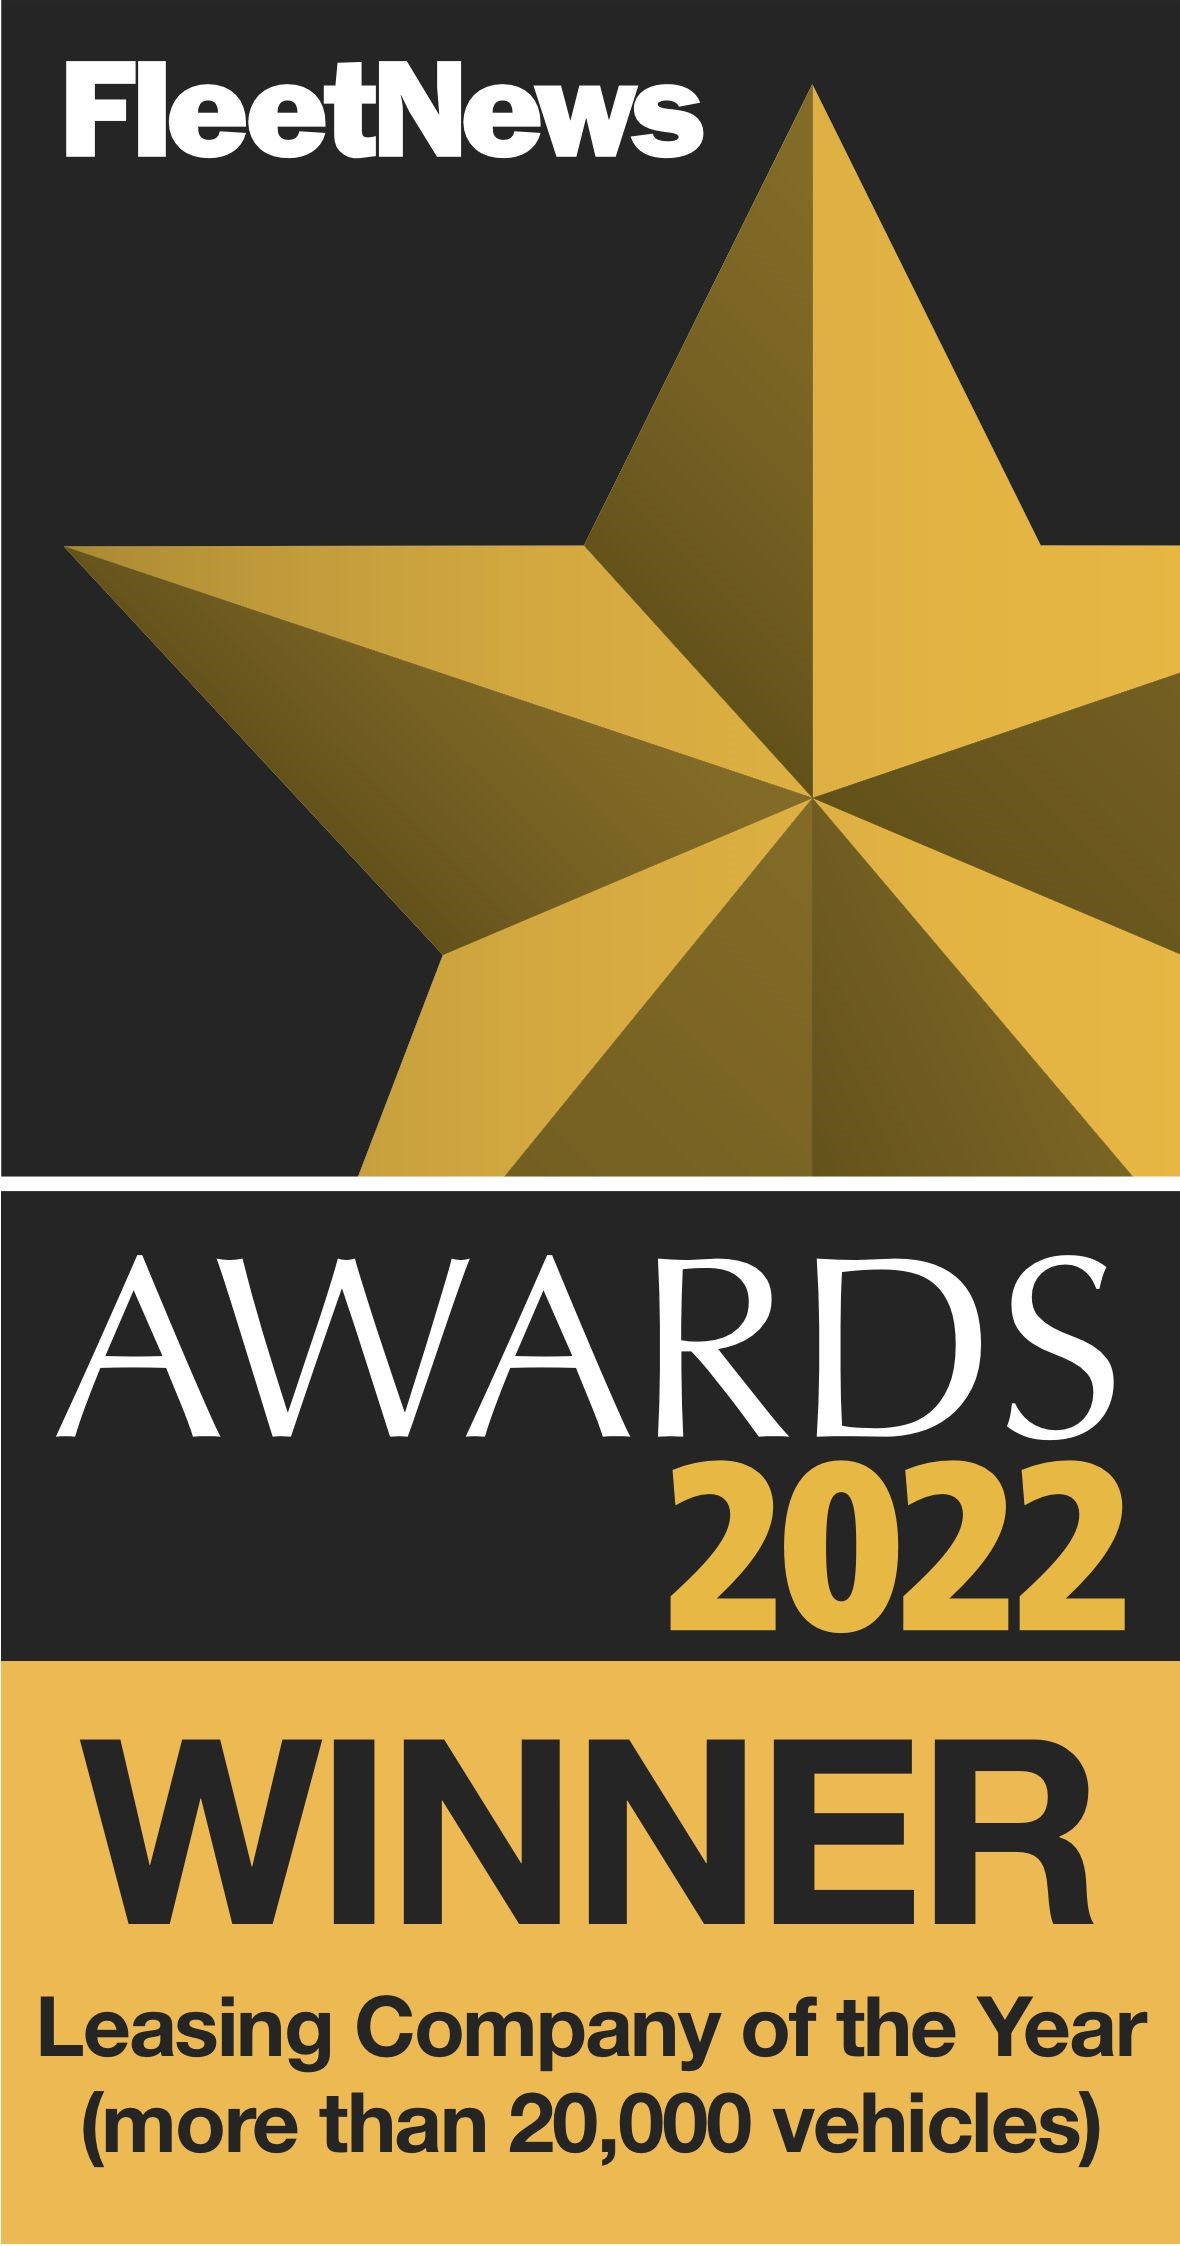 Fleet News Awards 2022